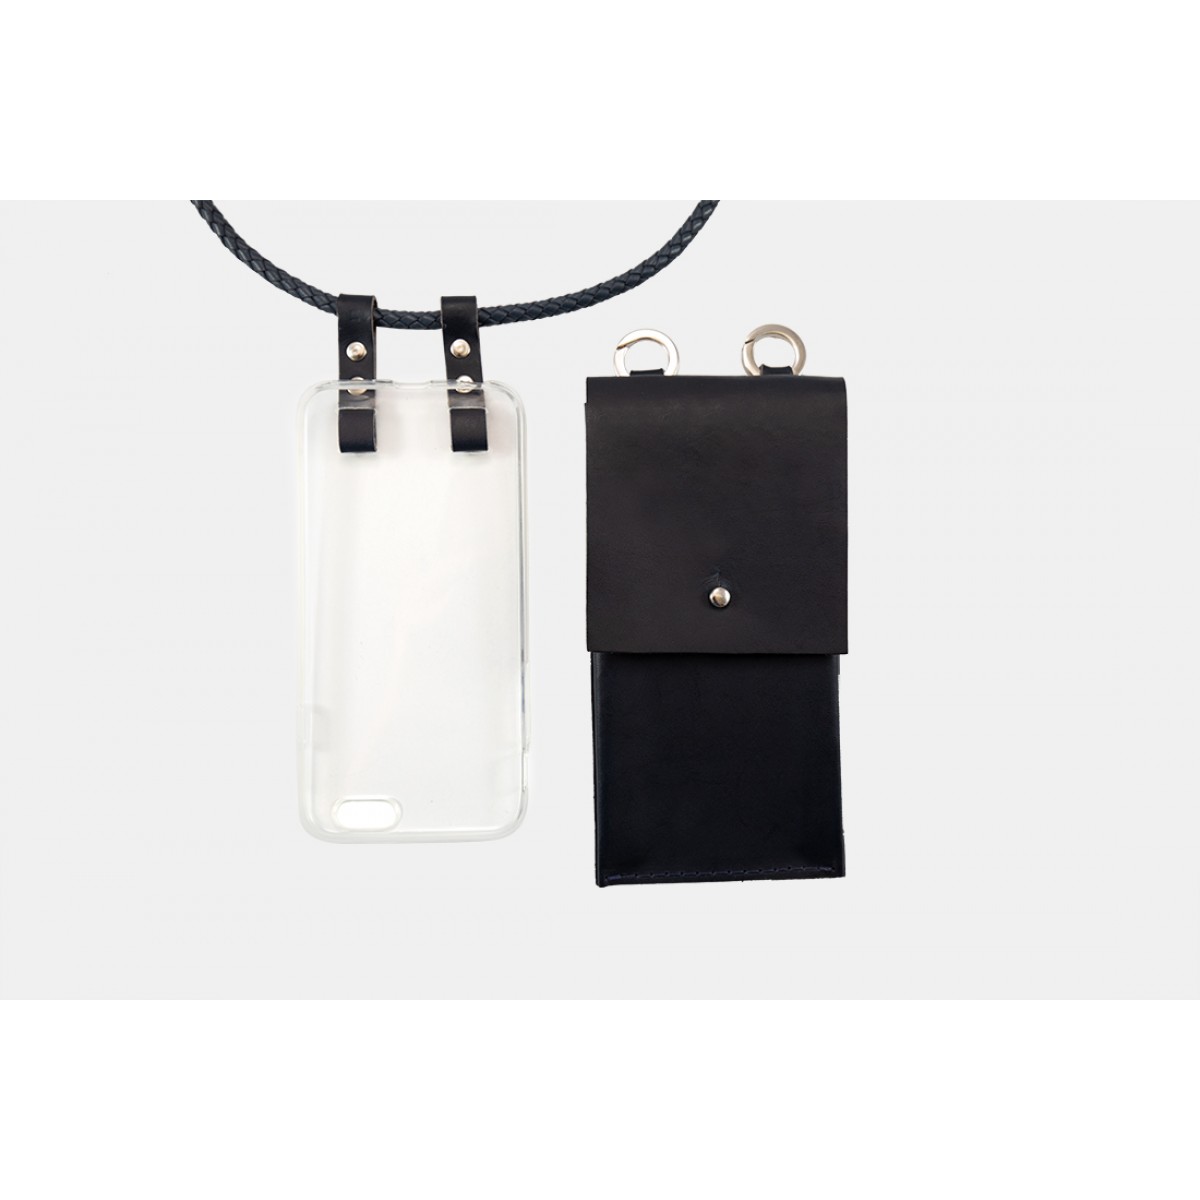 Lapàporter – iPhone case zum Umhängen mit geflochtener Lederkordel und abnehmbarer Tasche, dunkelblau/silber